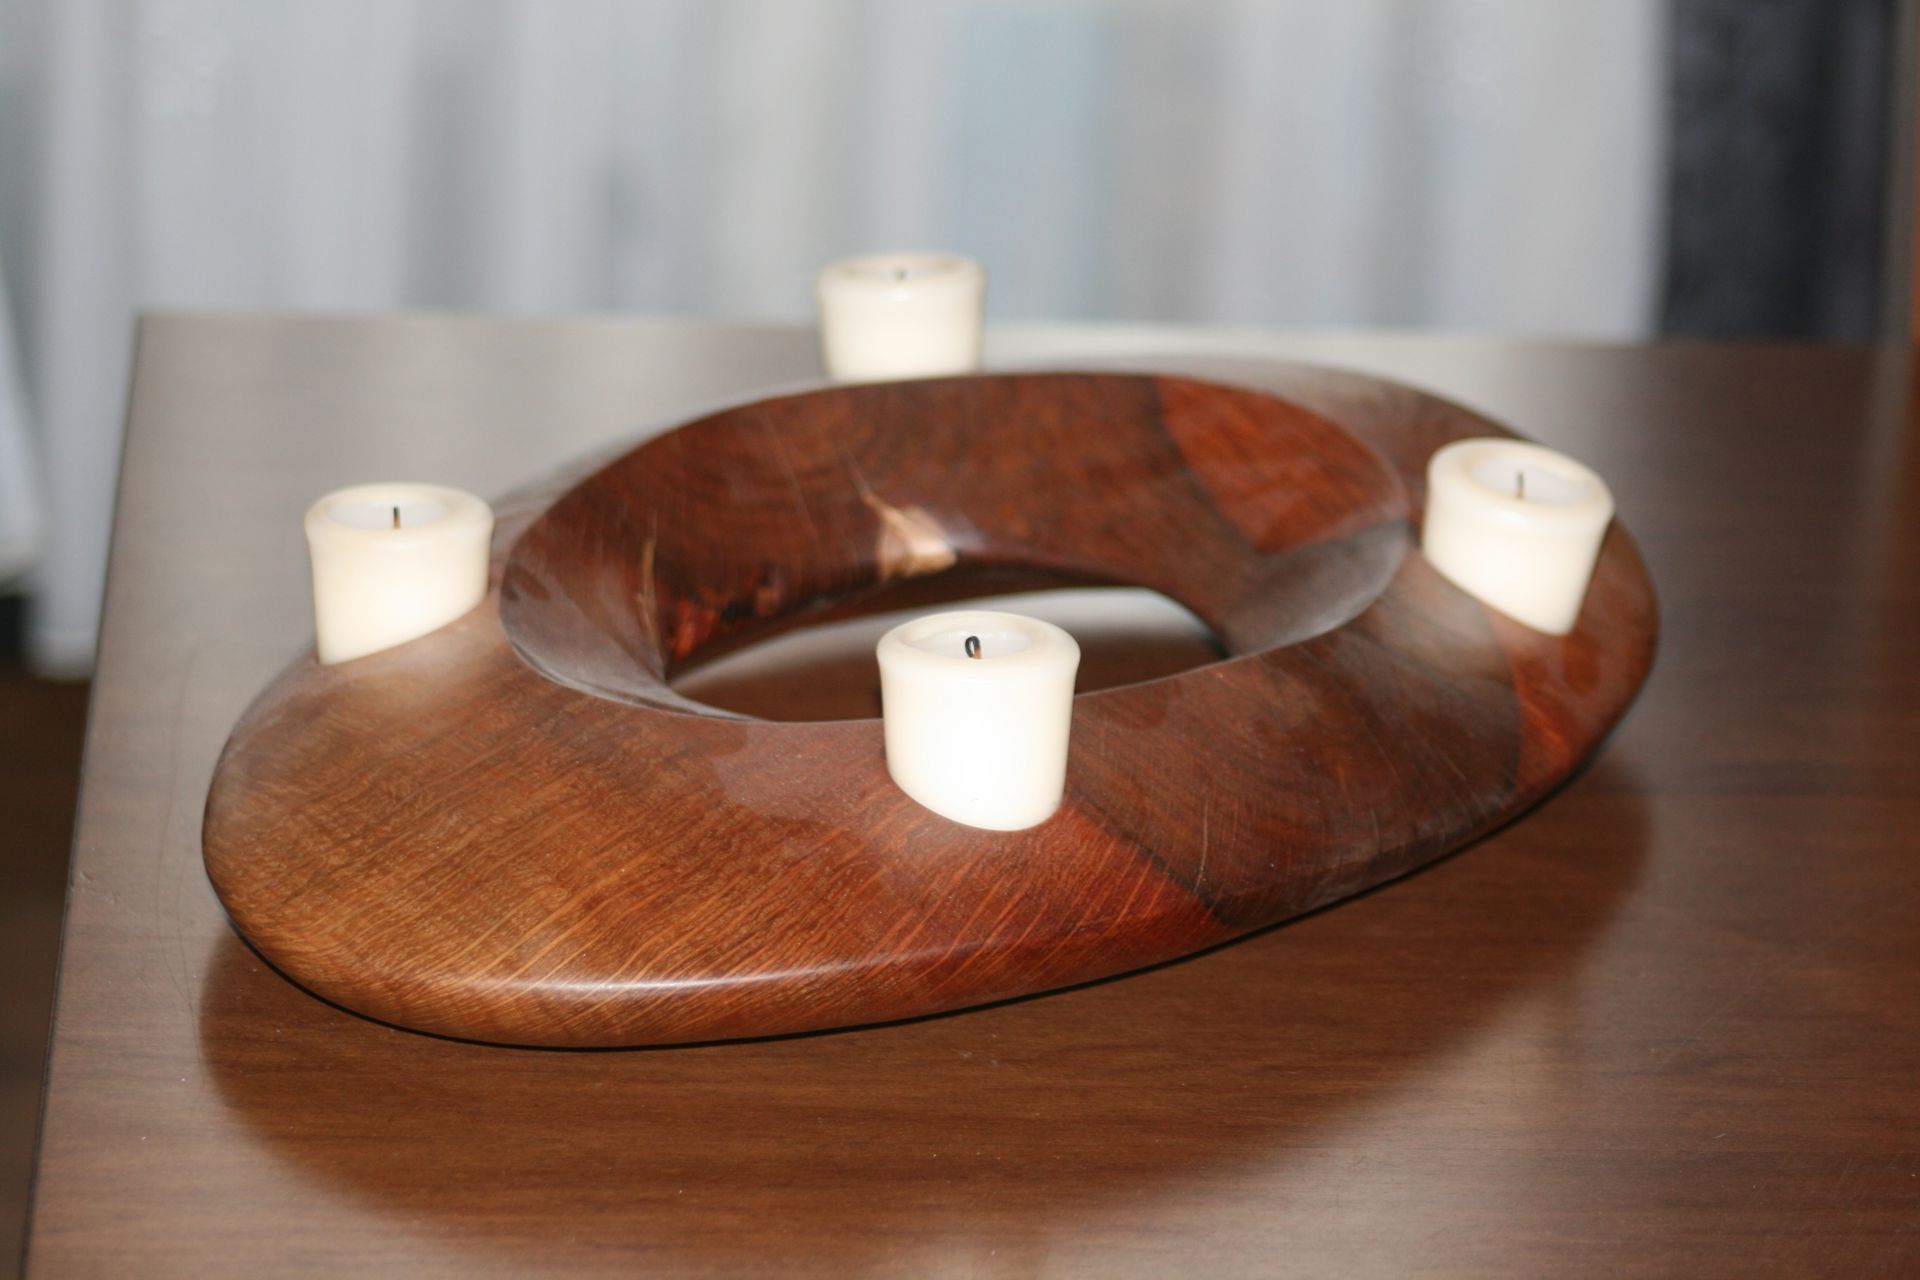 sacral wooden design handmade sanisio unique candle holder Advent black holm oak oval